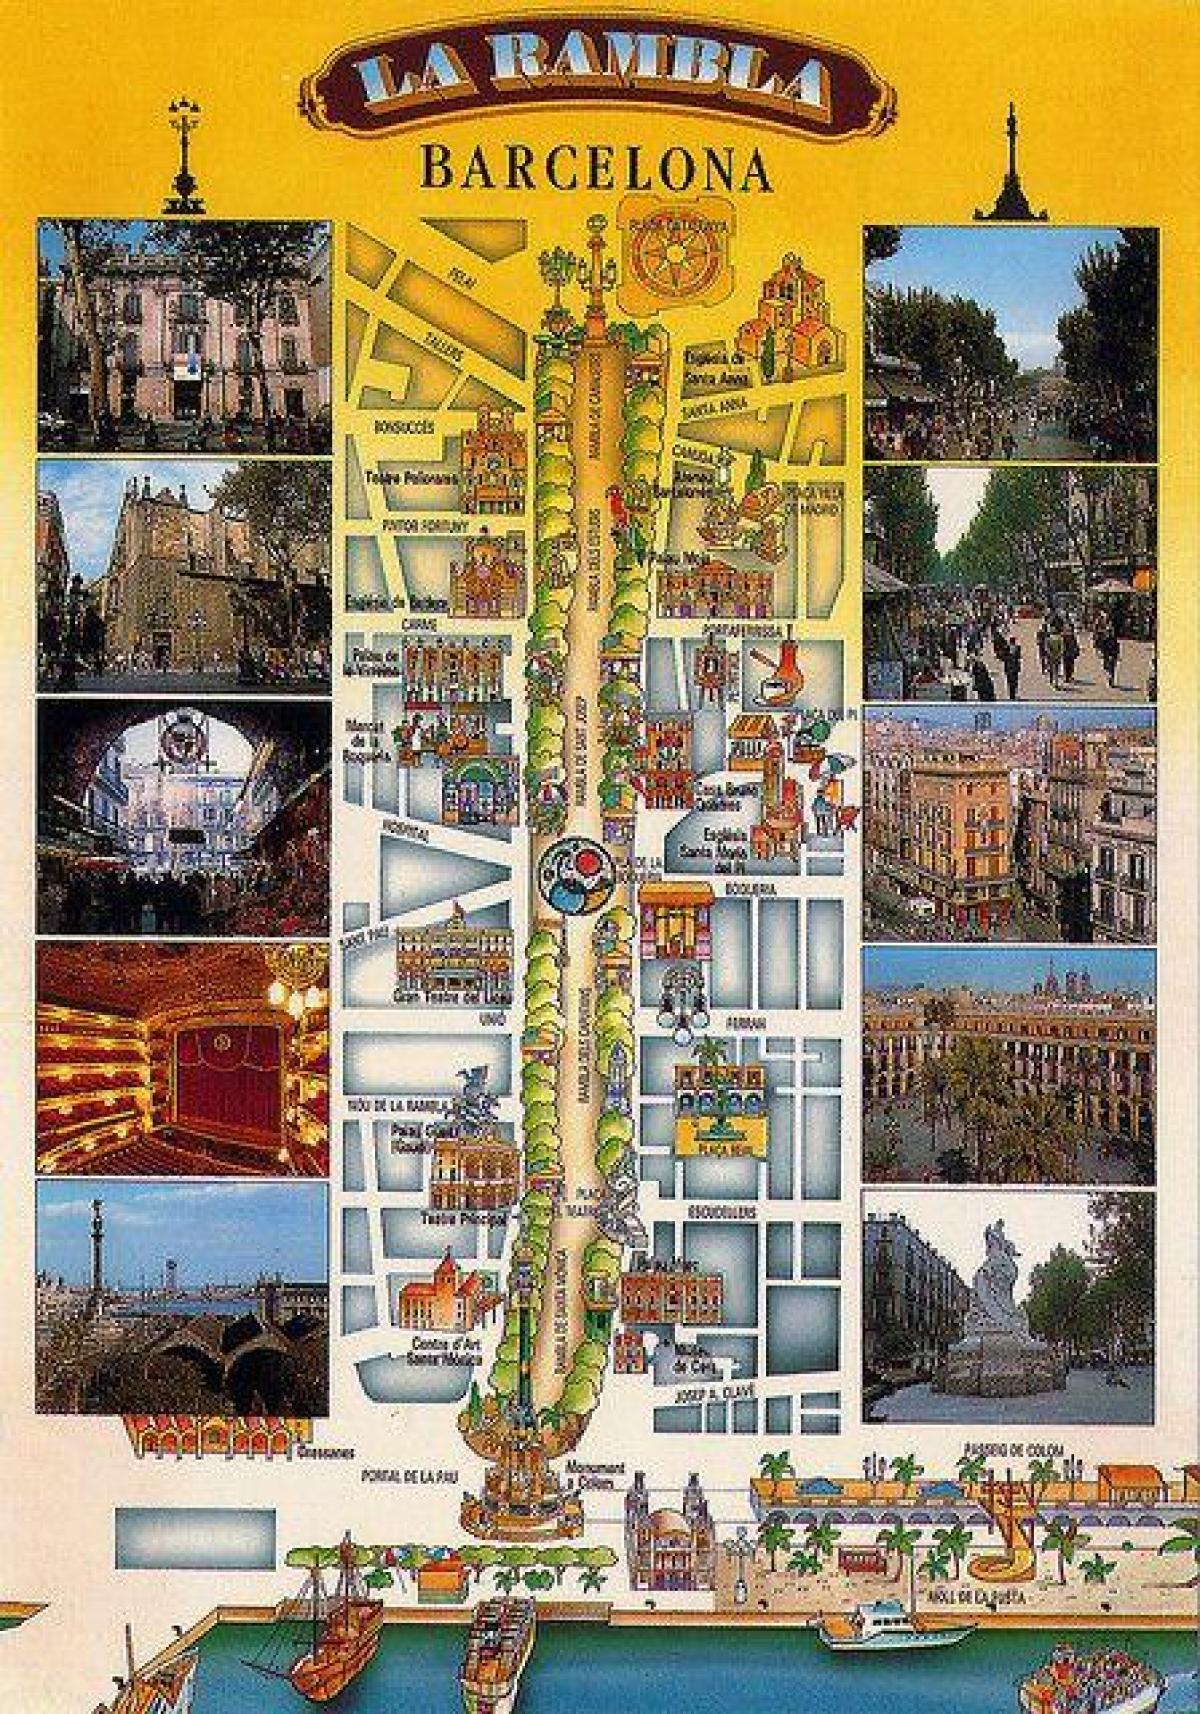 Las Ramblas Barcelona Map